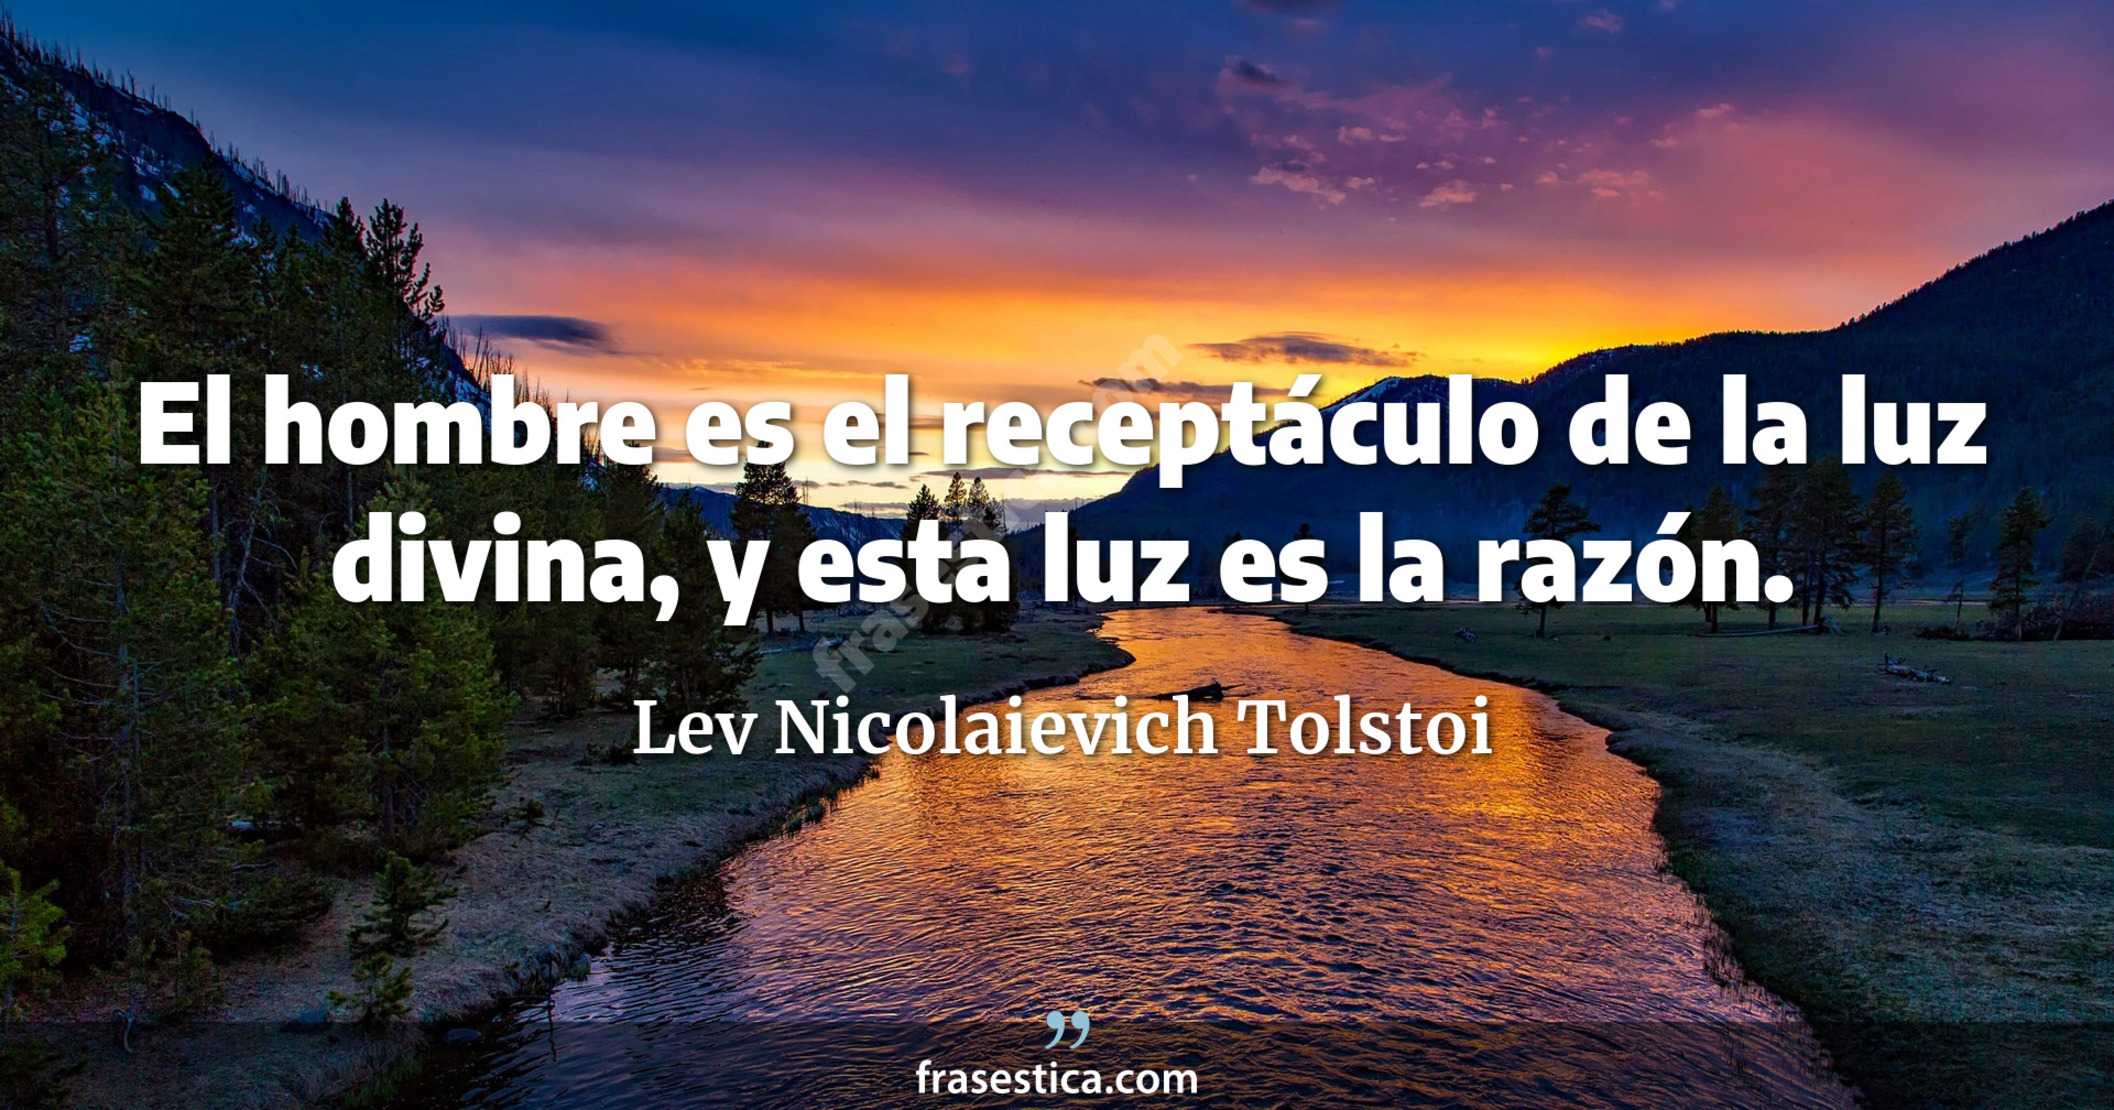 El hombre es el receptáculo de la luz divina, y esta luz es la razón. - Lev Nicolaievich Tolstoi